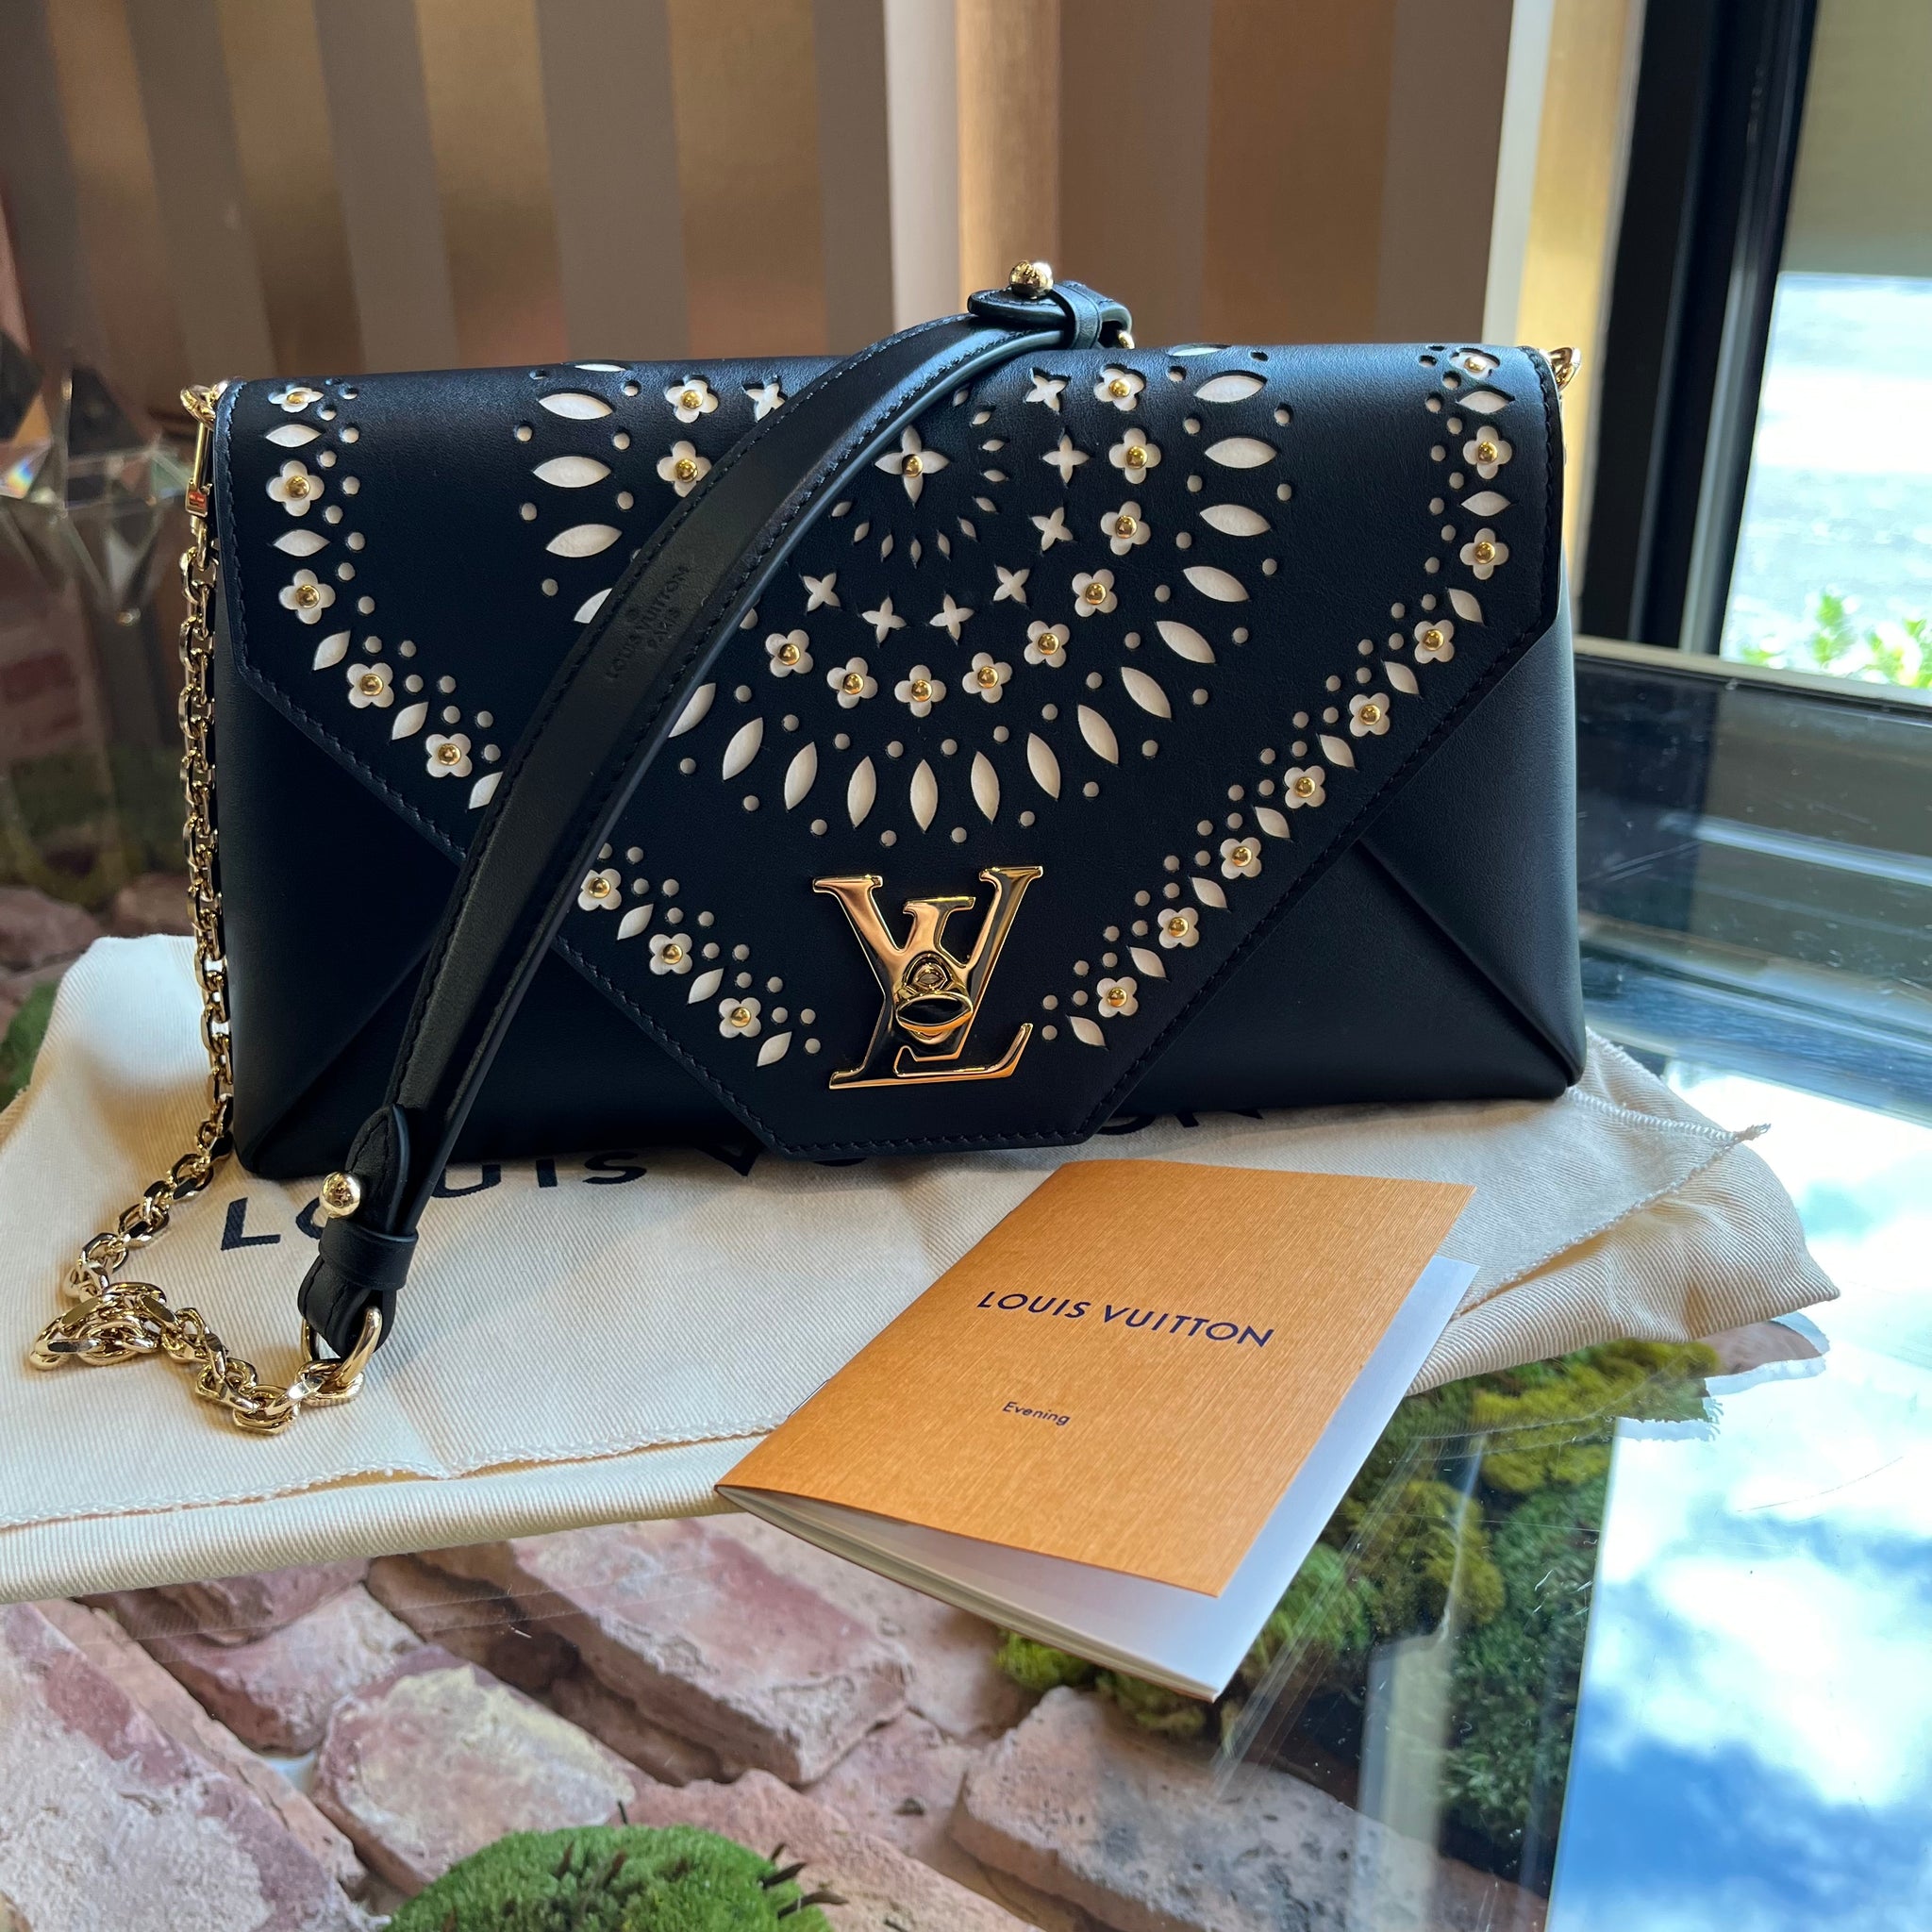 Handbags Louis Vuitton Louis Vuitton Black/Gold Leather Twist PM Handbag Limited Edition